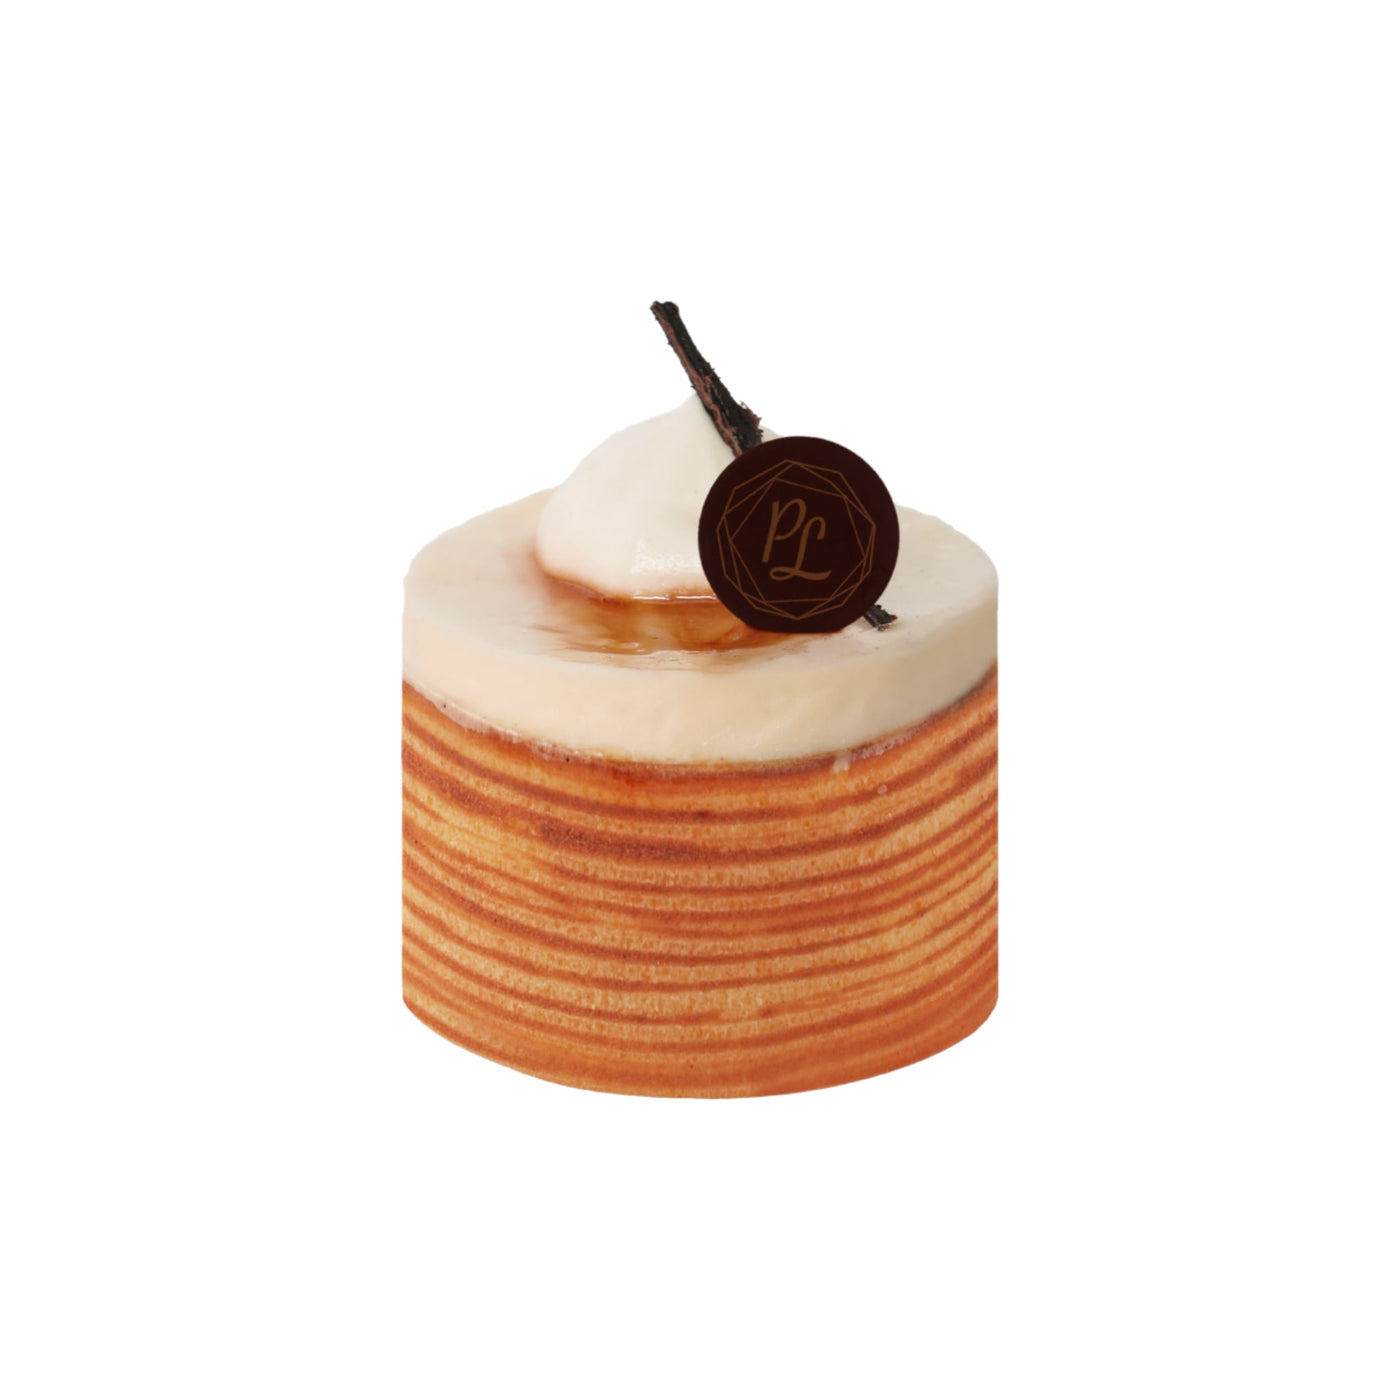 Crème Brûlée Cake - Artisanal Pastries